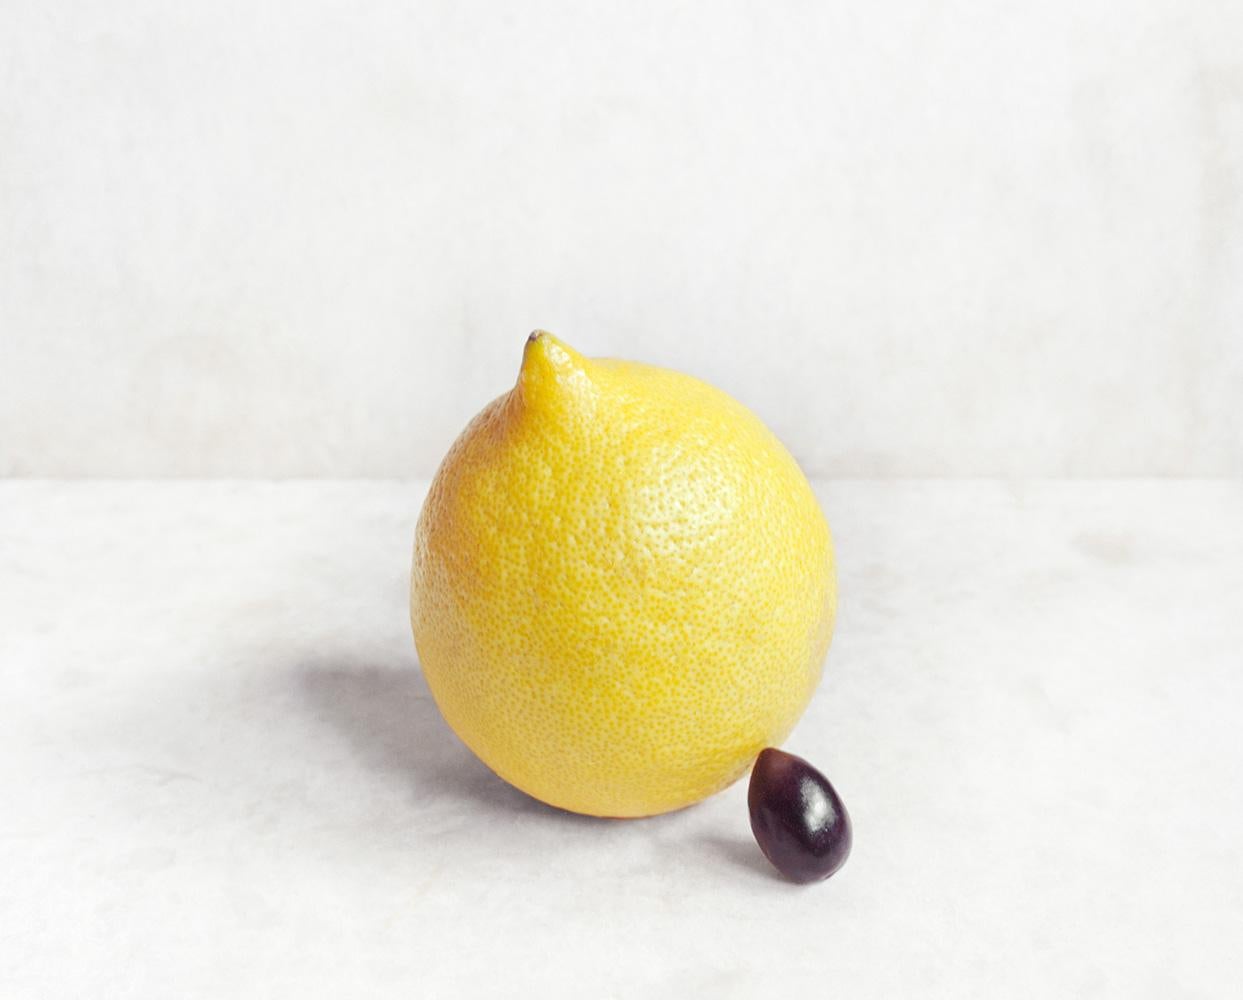 David Halliday Still-Life Photograph - Lemon and Black Olive (Contemporary Still Life of Mediterranean Fruits, Framed)